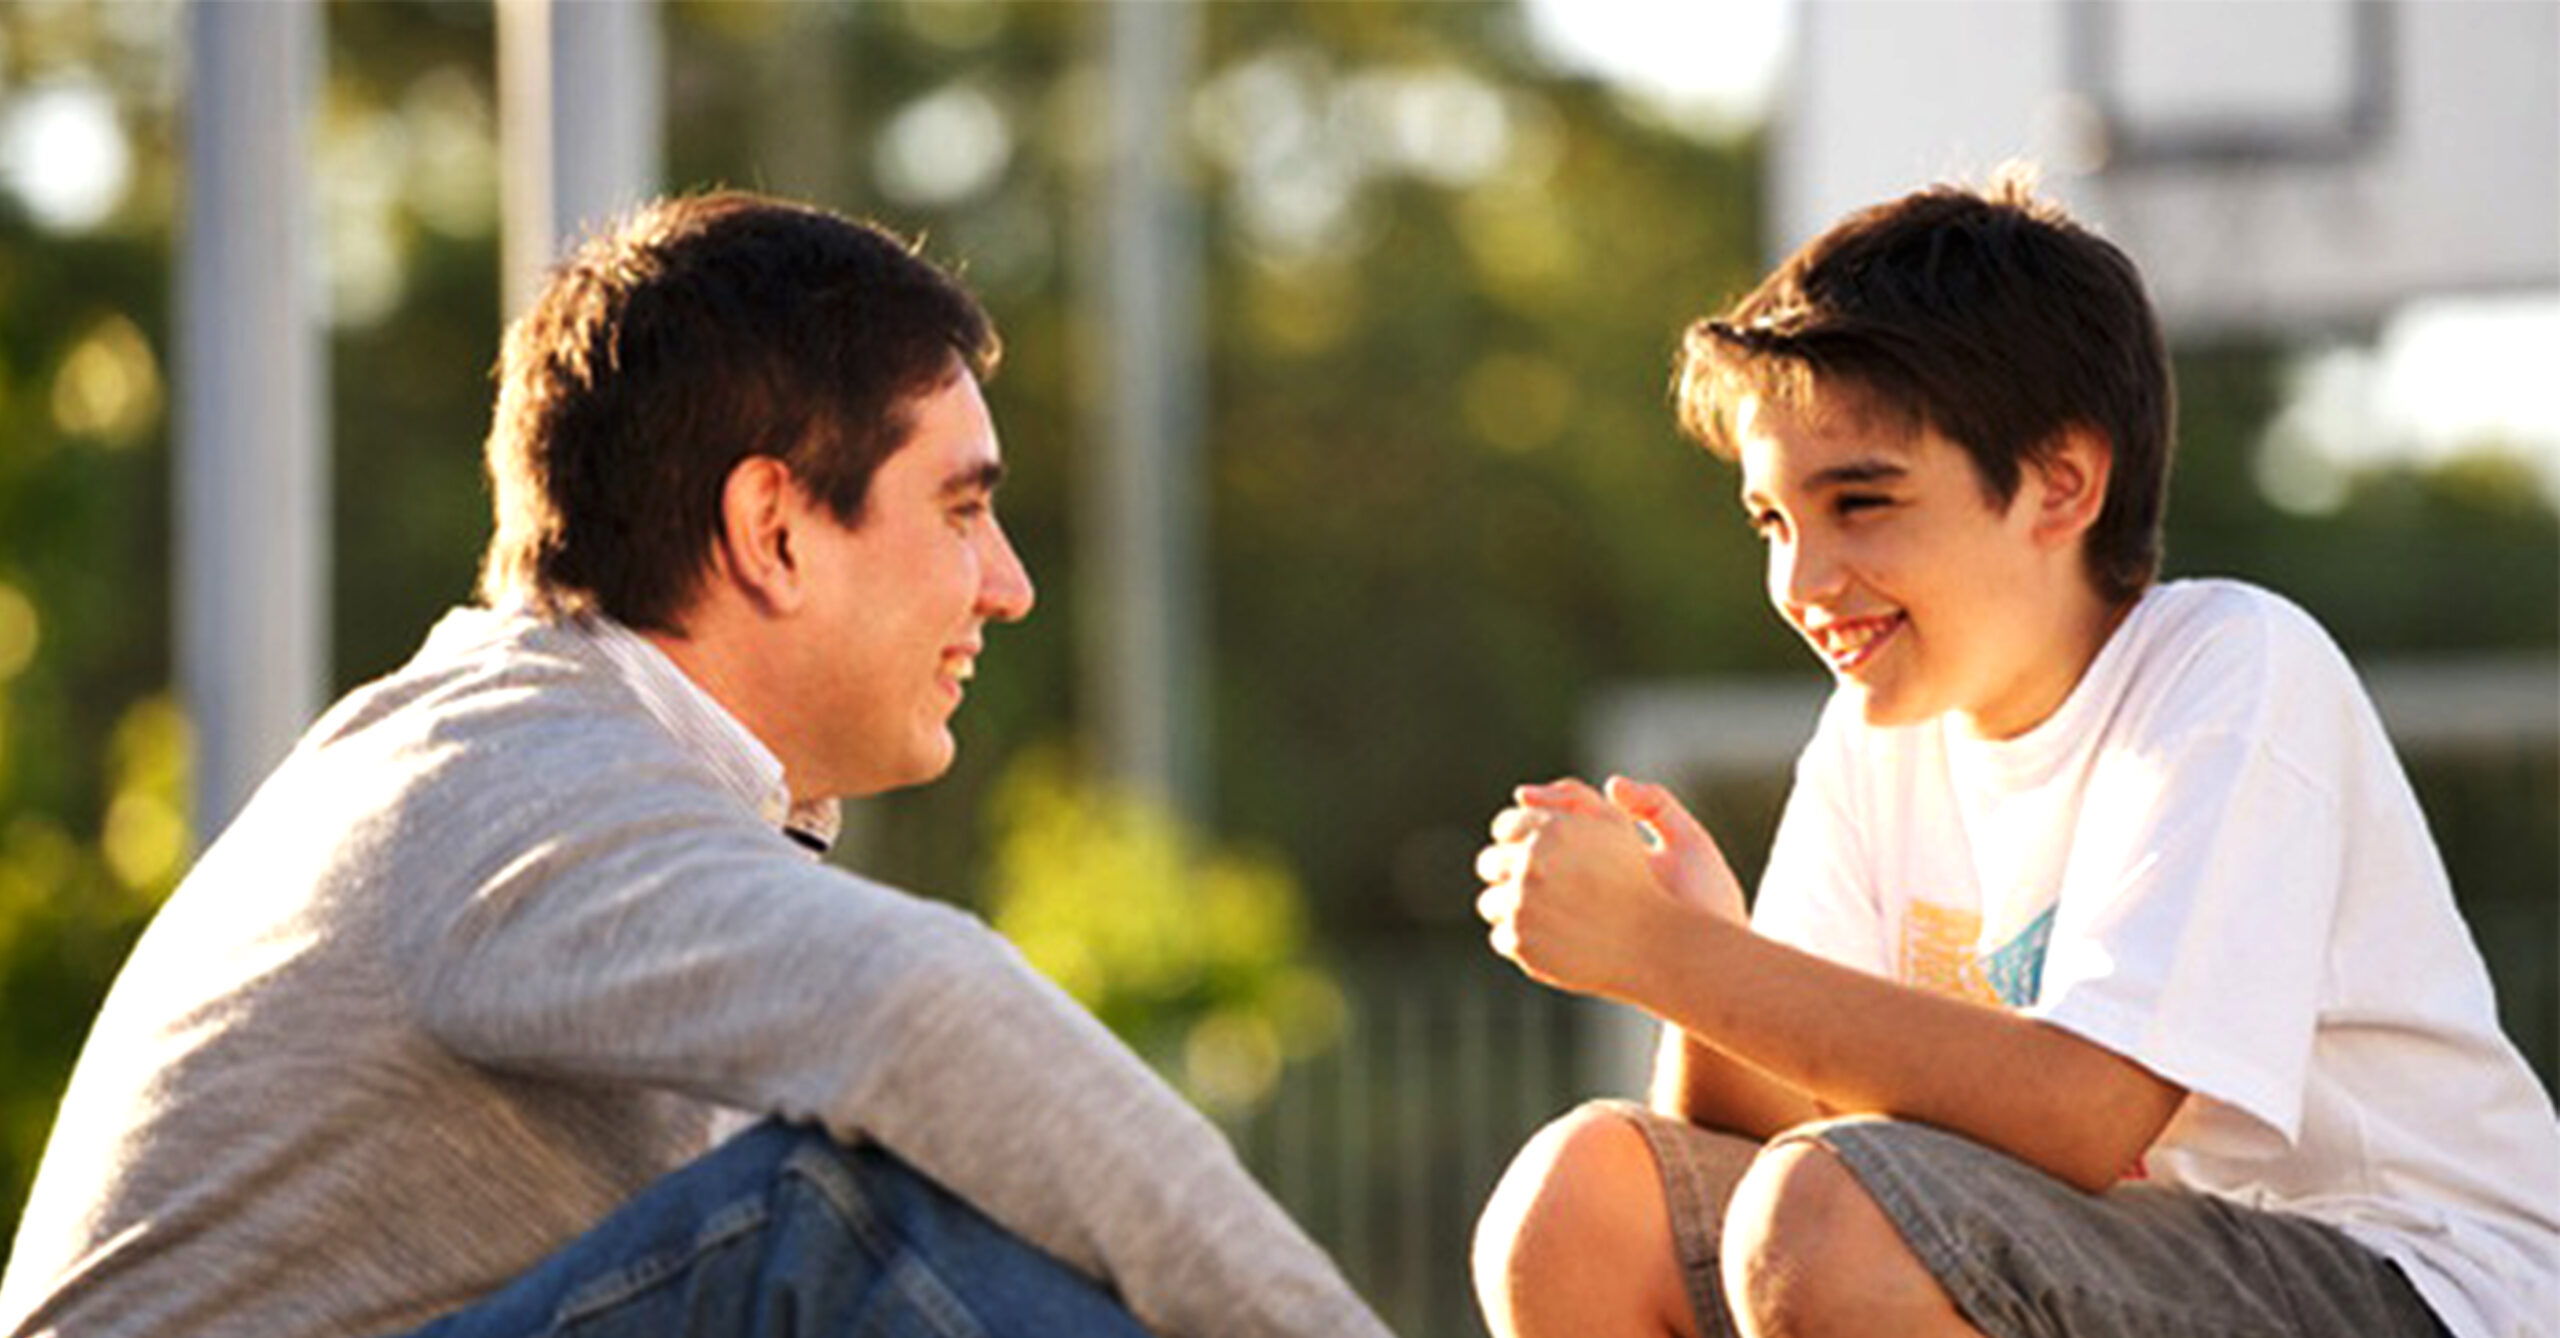 Phương pháp để bố mẹ có thể thương lượng với con cái khi có xung đột